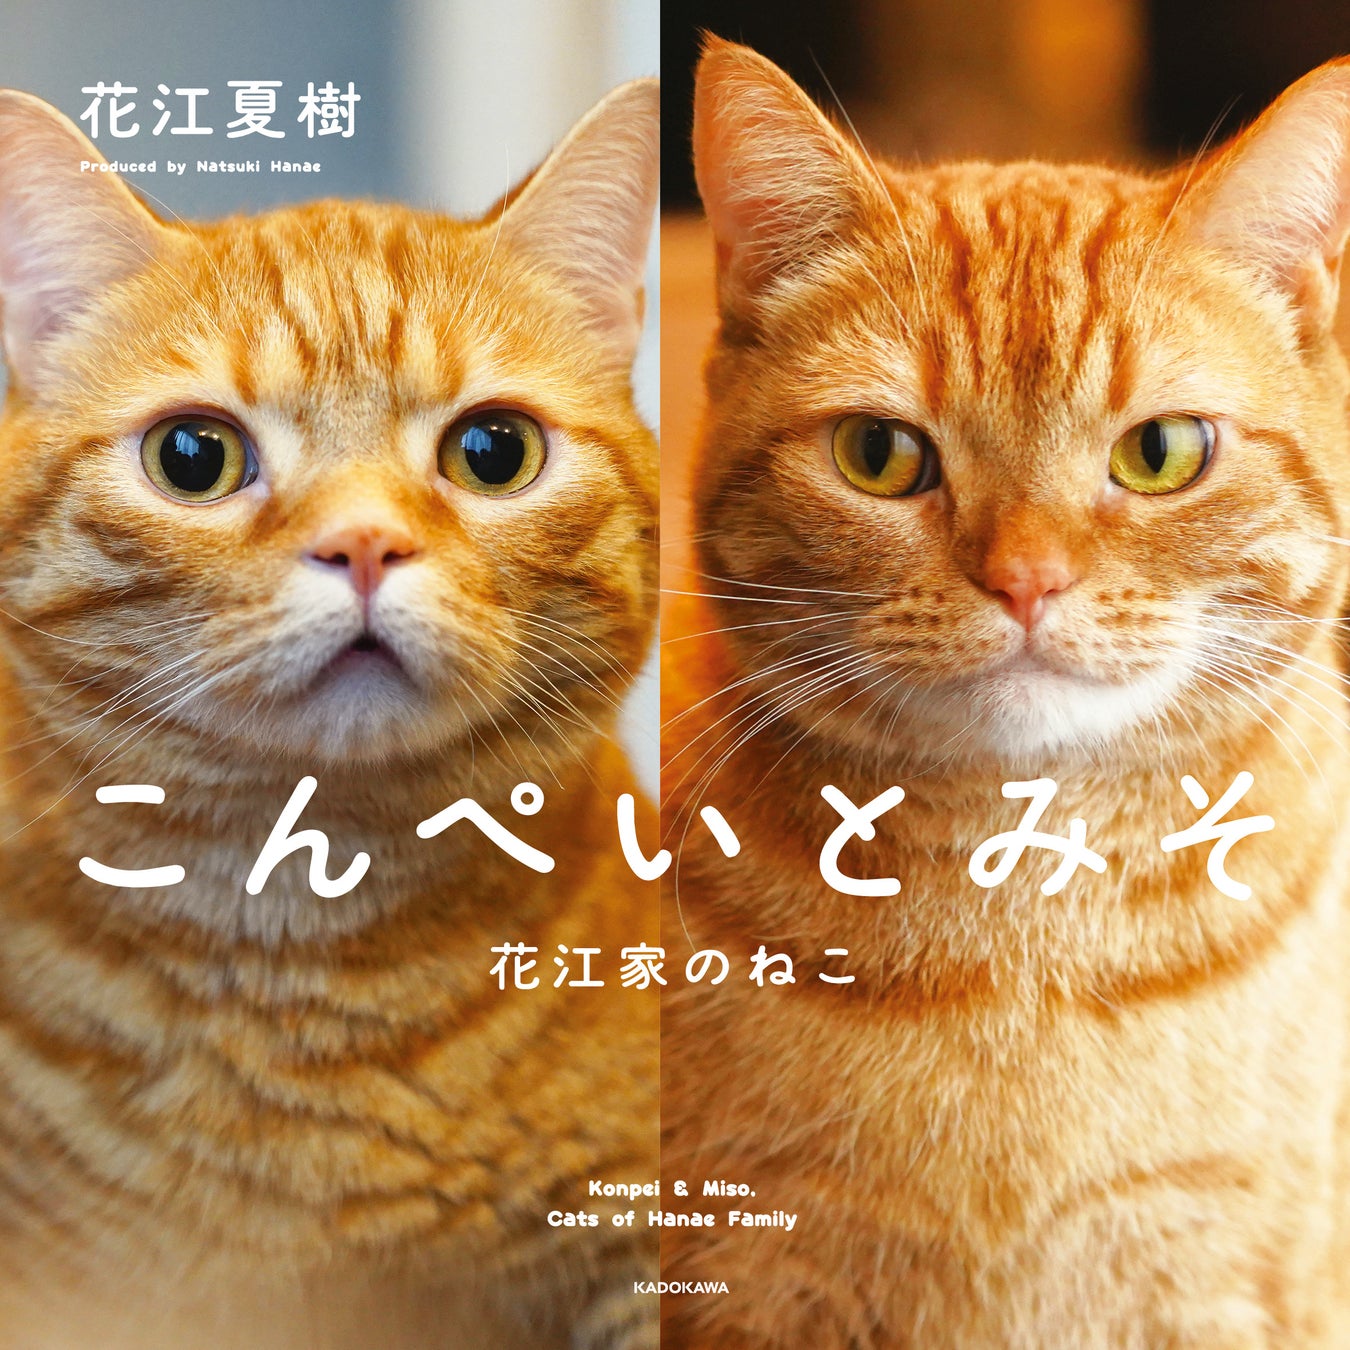 人気声優・花江夏樹が撮影＆プロデュースを全面的に手掛けた初の猫写真集『こんぺいとみそ』が11月17日発売！